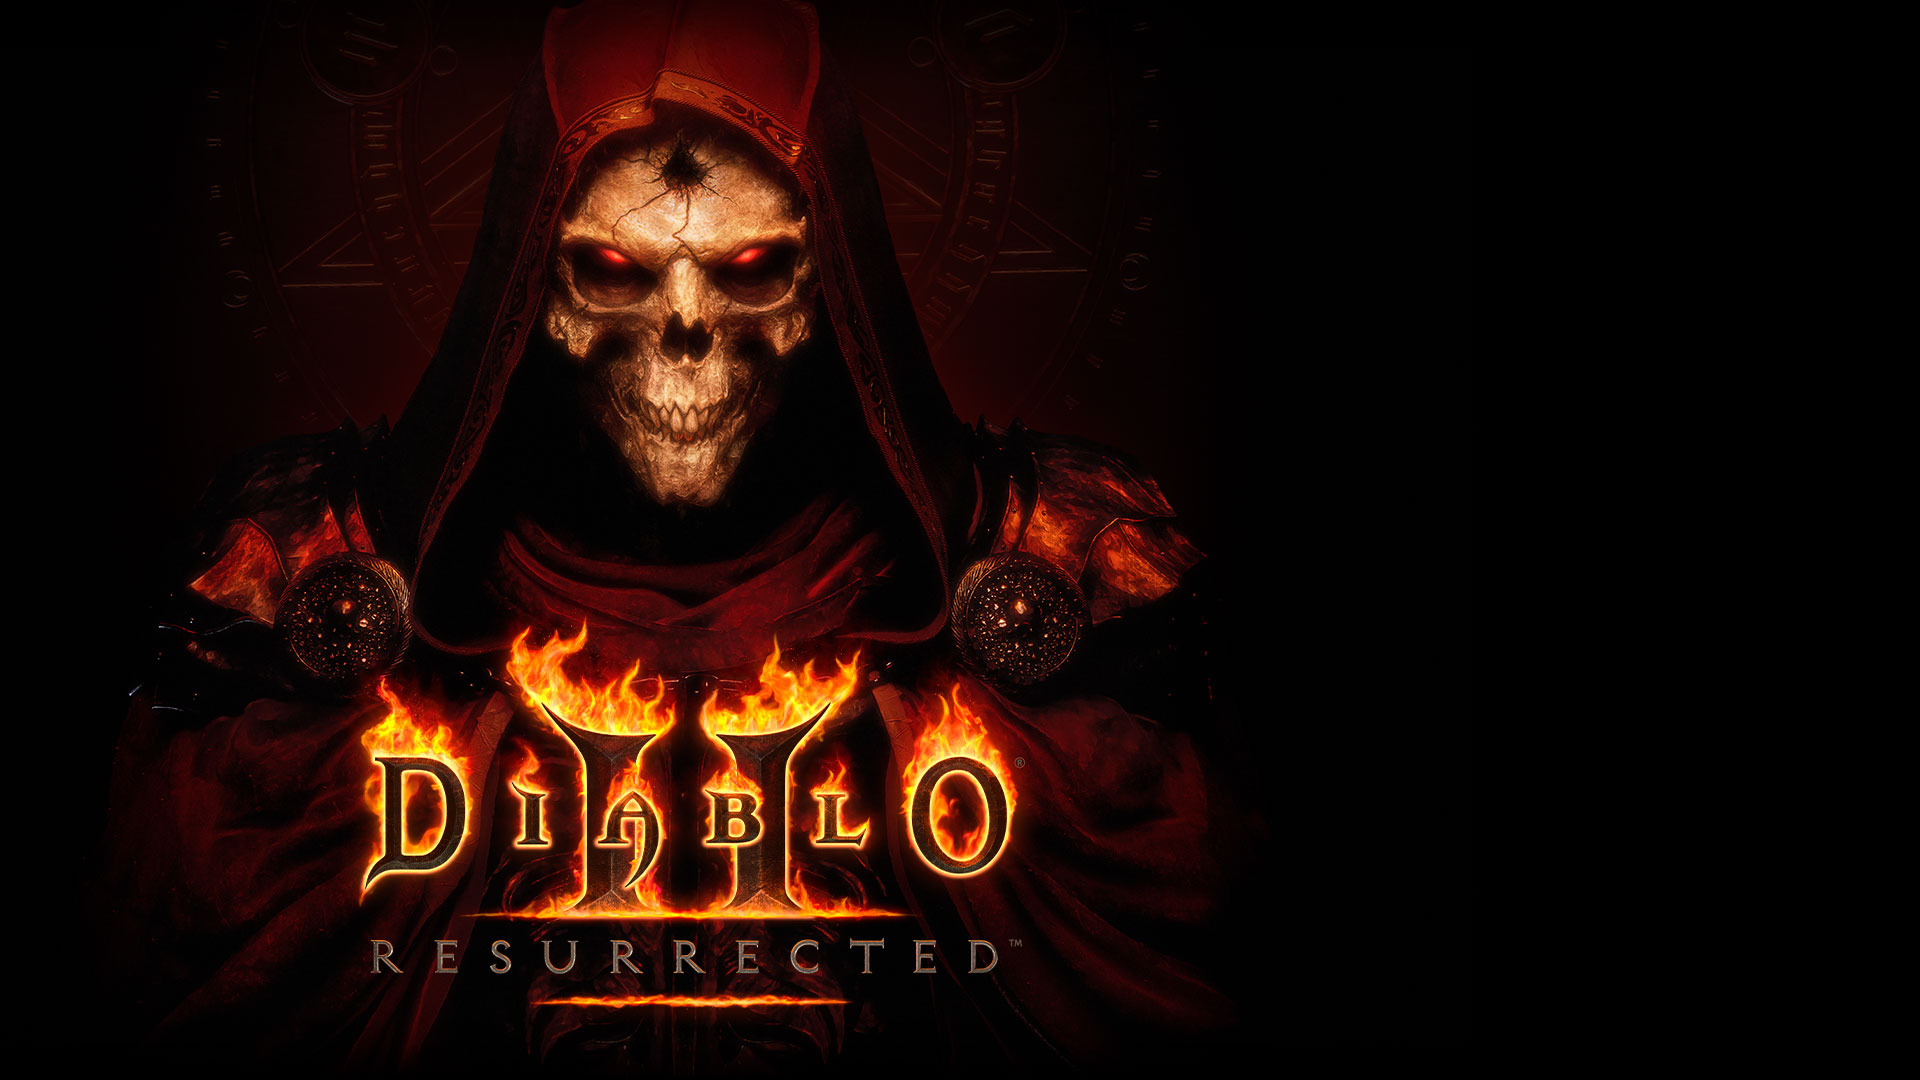 Логотип Diablo 2: Resurrected над скелетом со светящимися красными глазами в темно-красном плаще.